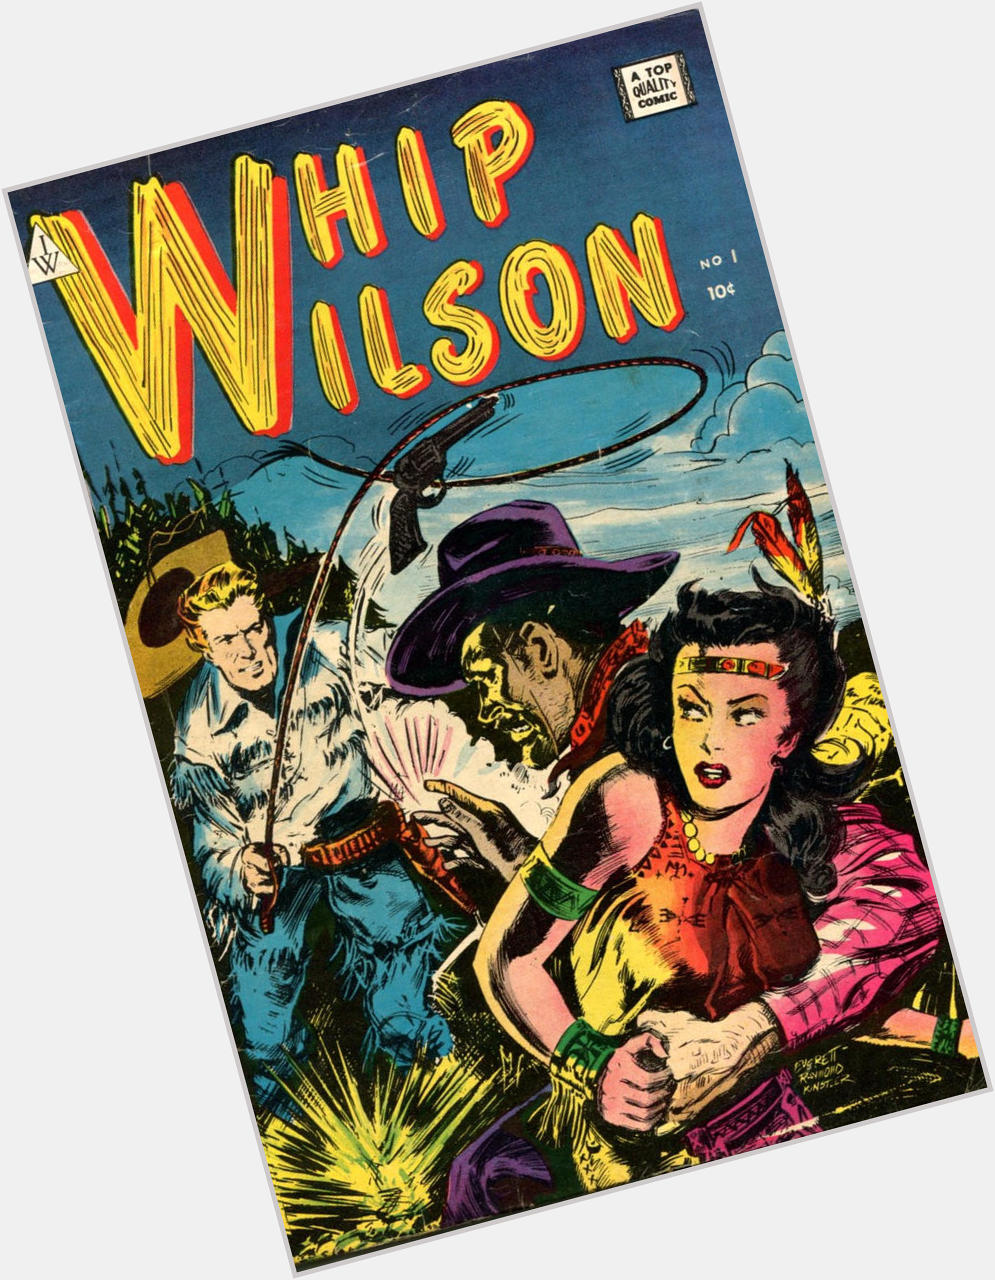 Whip Wilson  